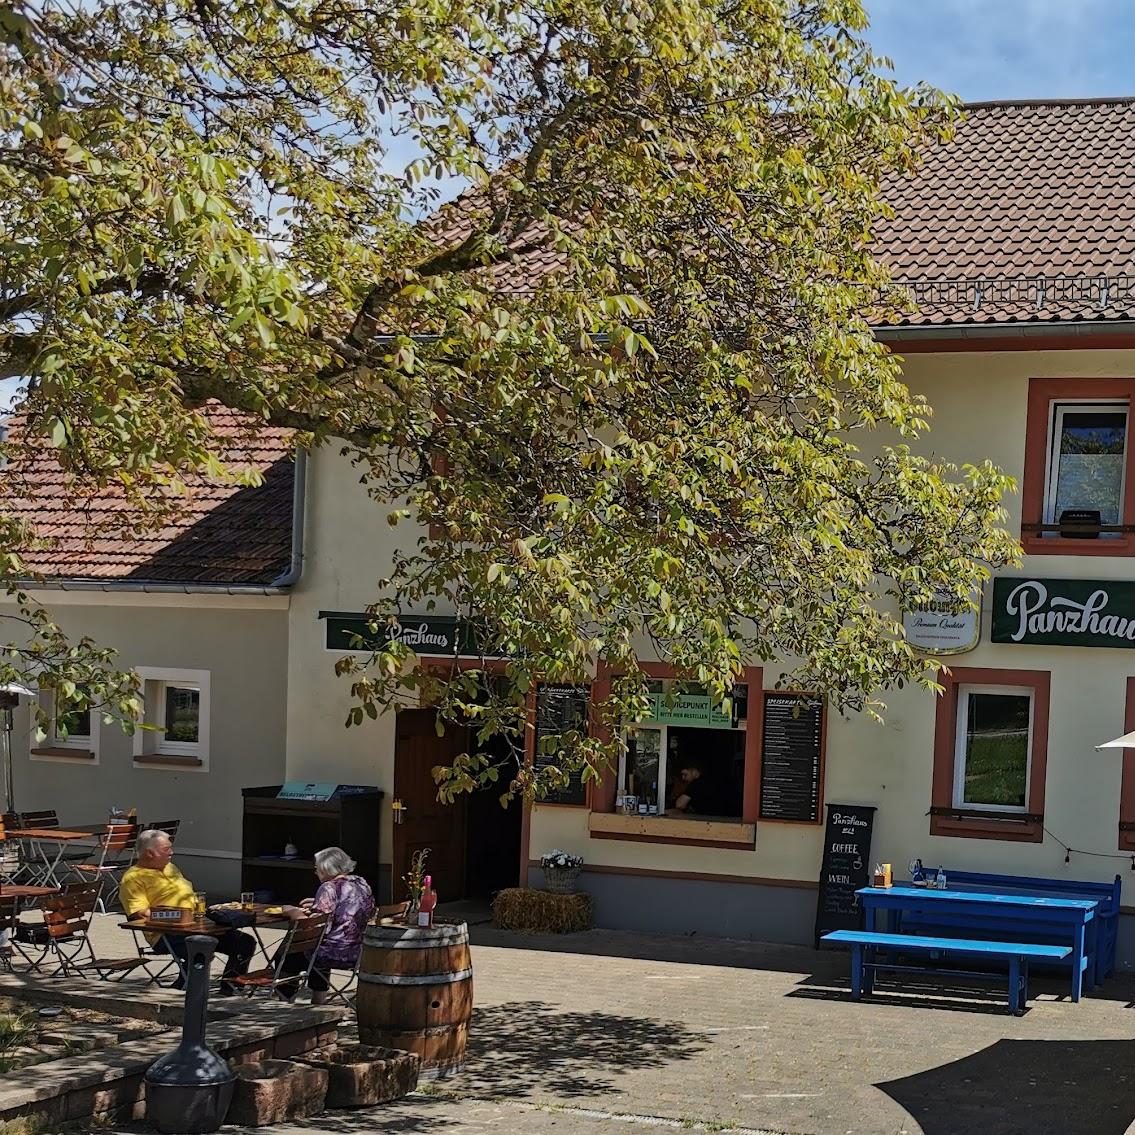 Restaurant "Das Gasthaus im Panzhaus" in Greimerath